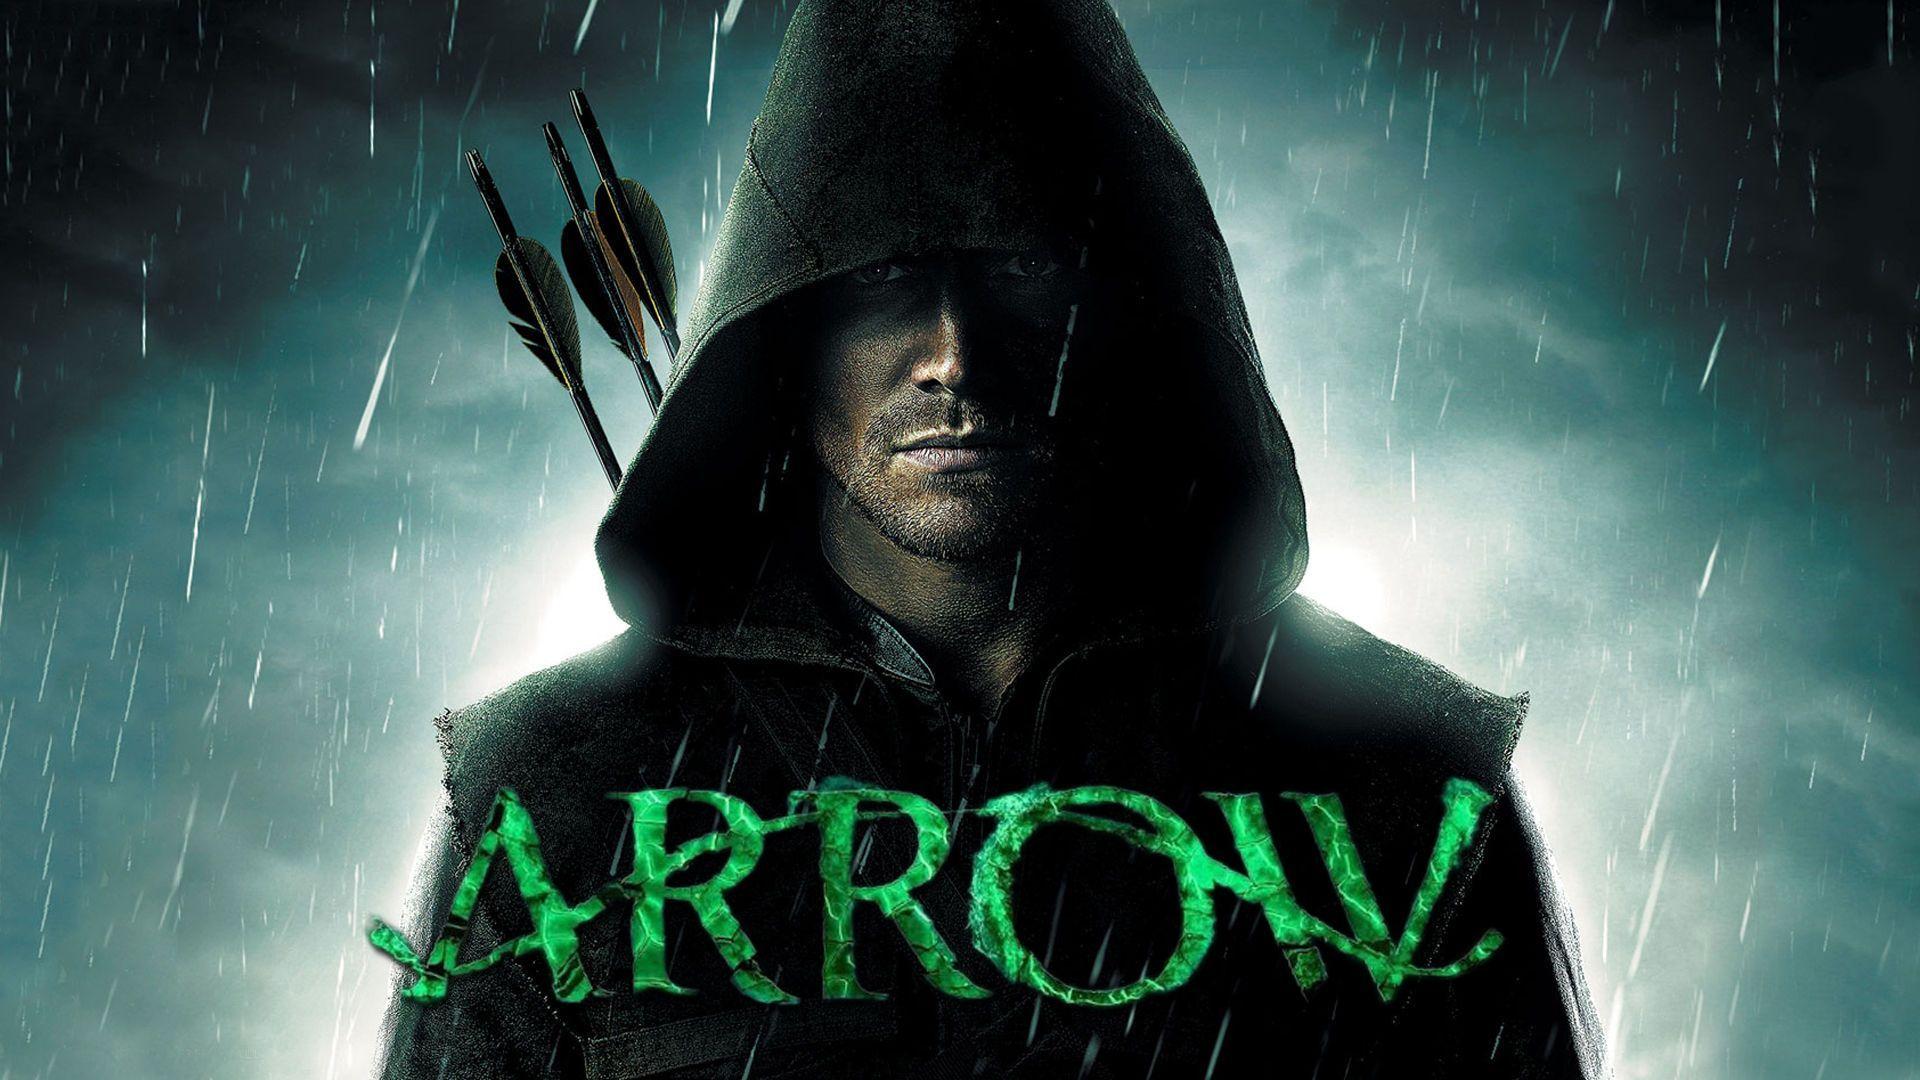 Arrow HD Wallpaper: Find best latest Arrow HD Wallpaper